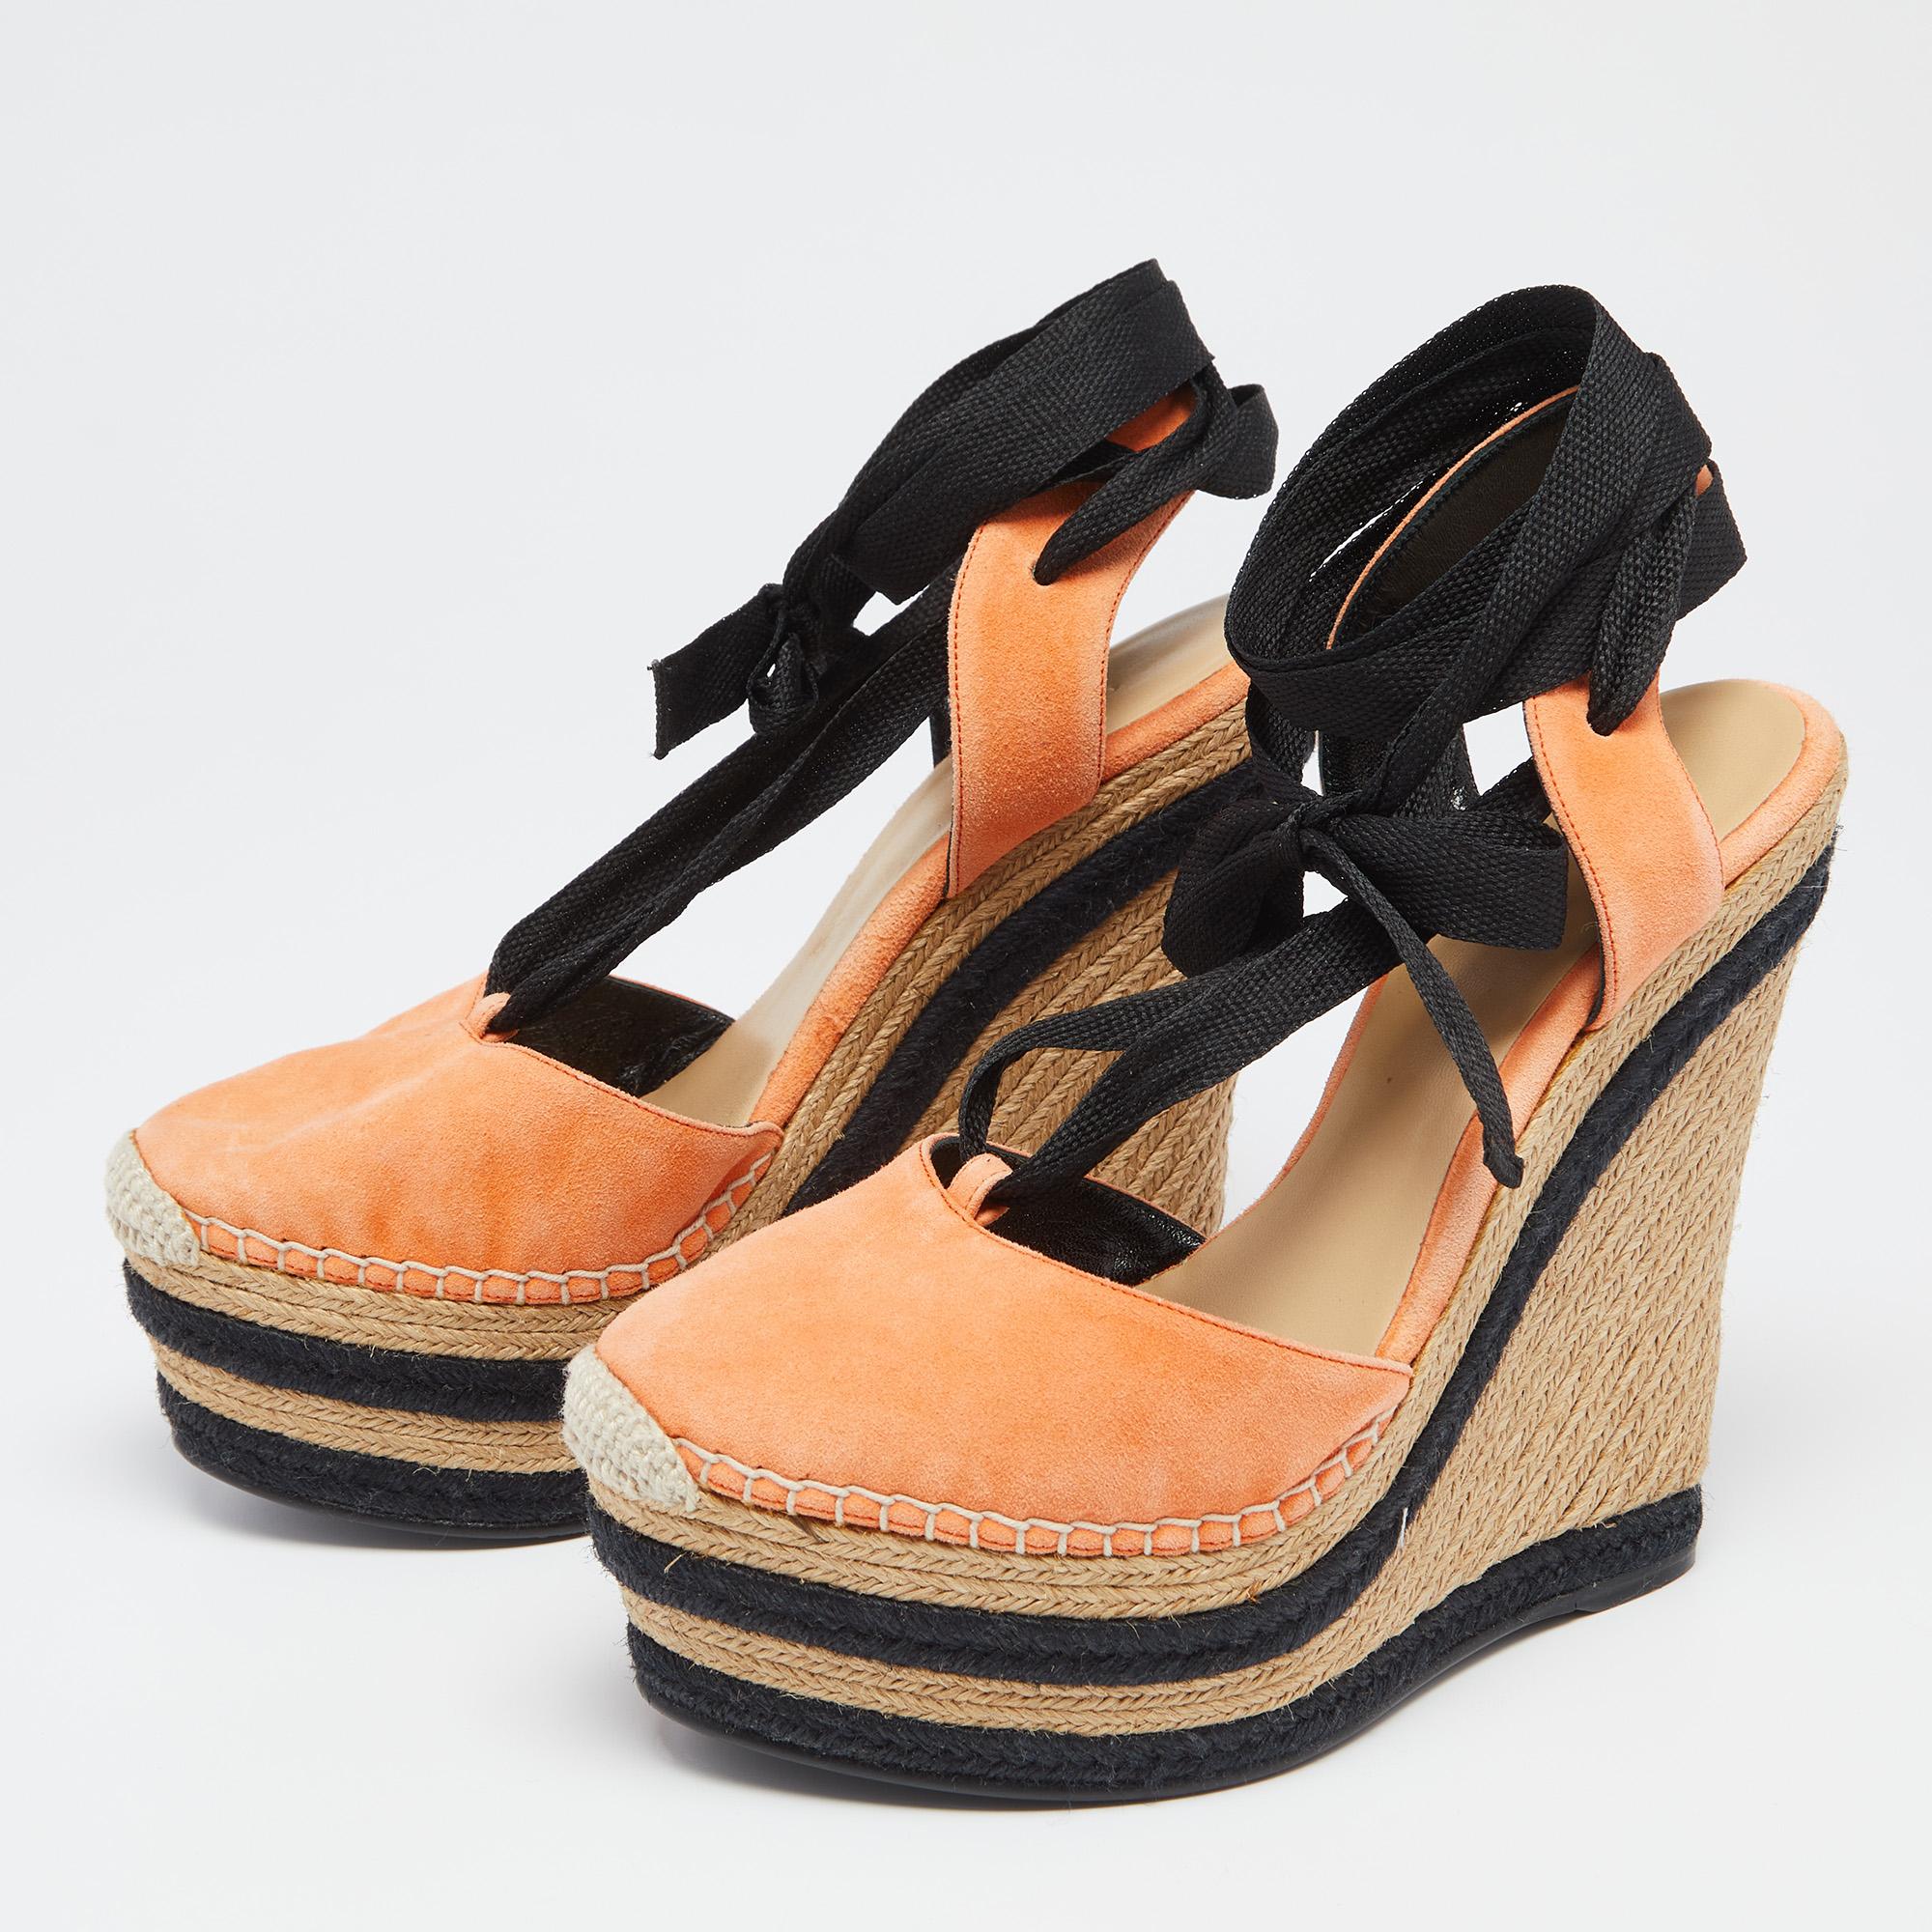 Beige Gucci Orange/Black Suede Wedge Espadrille Sandals Size 36